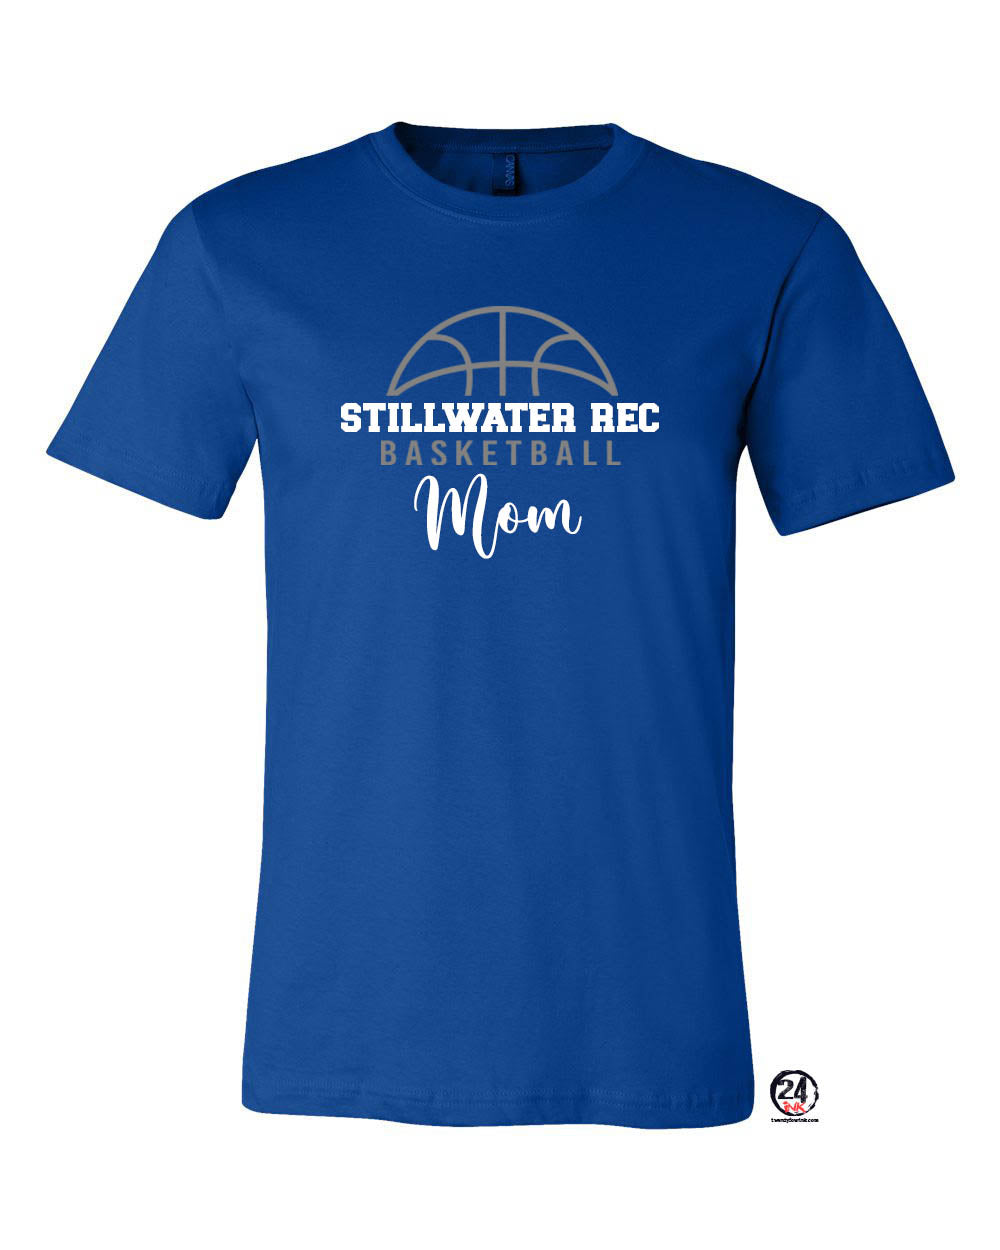 Stillwater Rec Basketball Ball Mom T-Shirt